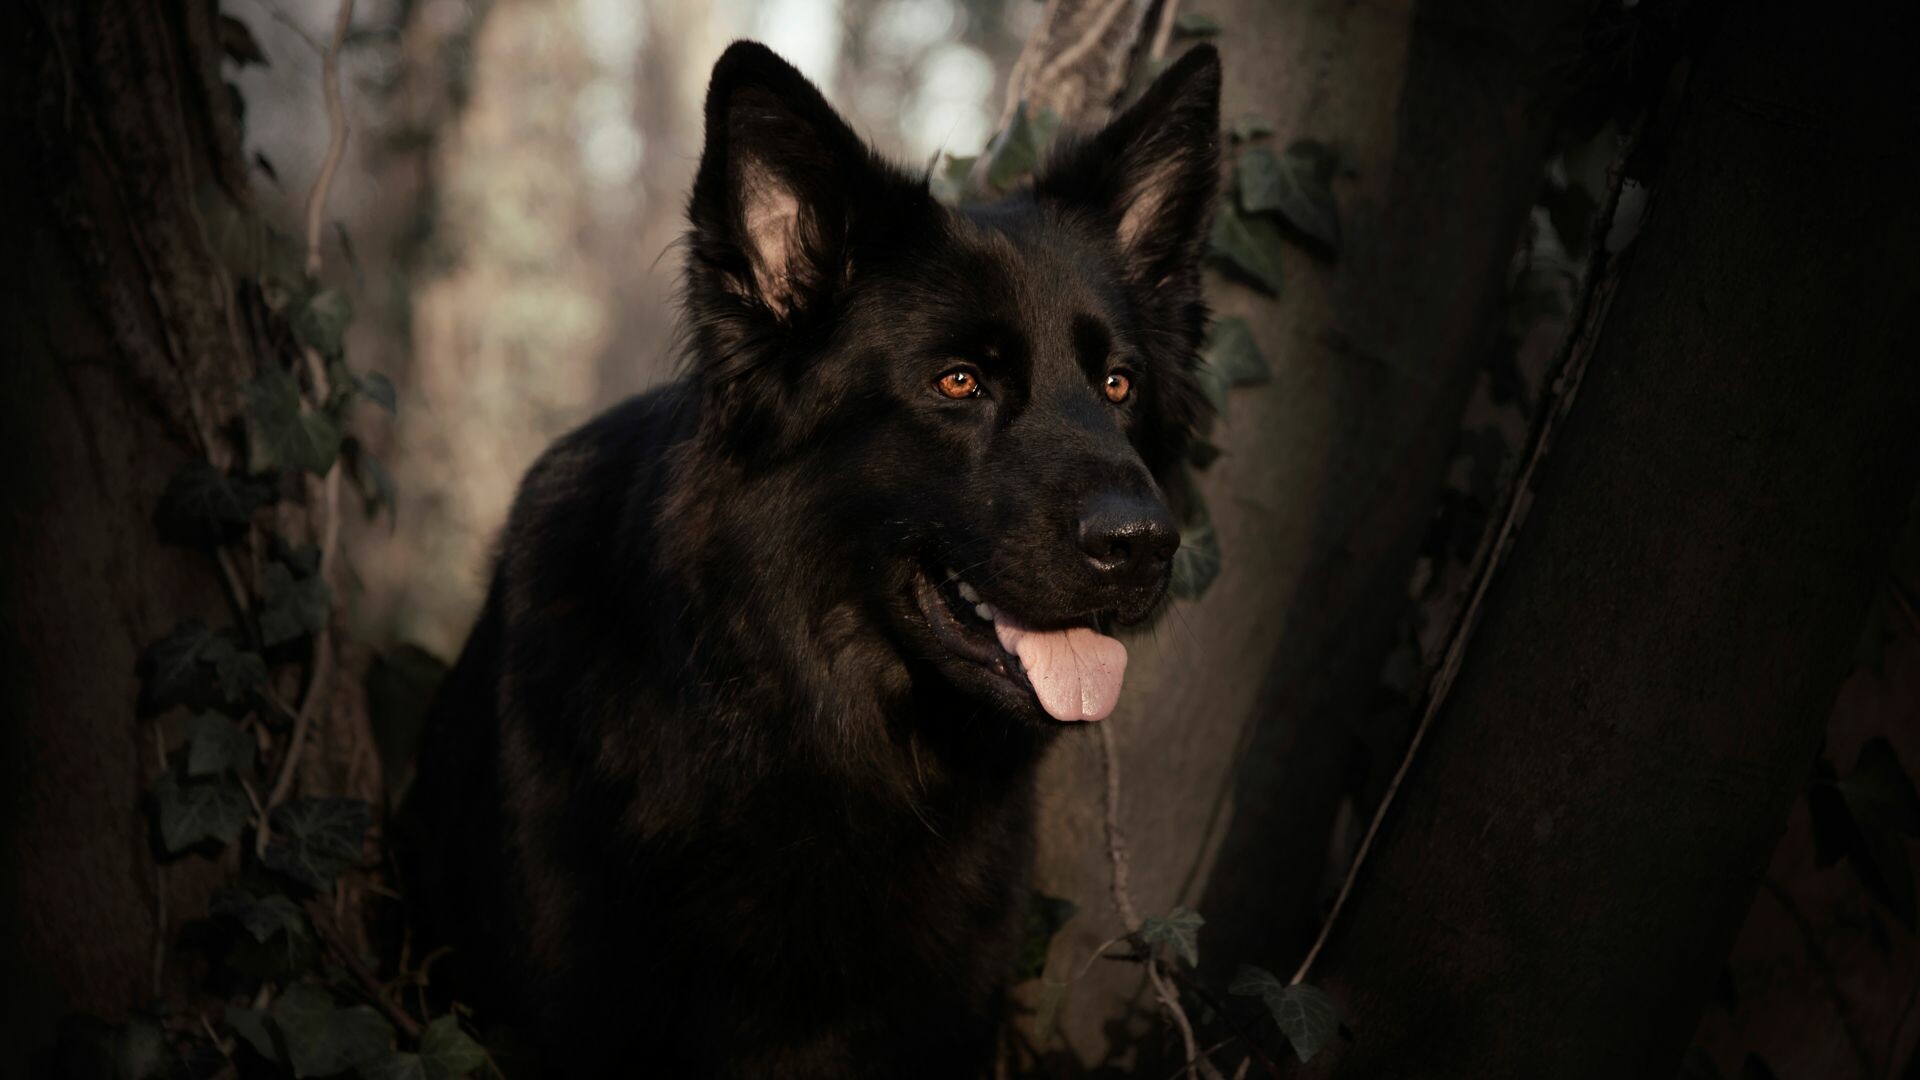 German Shepherd, Black wallpaper, HD image, Striking canine beauty, 1920x1080 Full HD Desktop